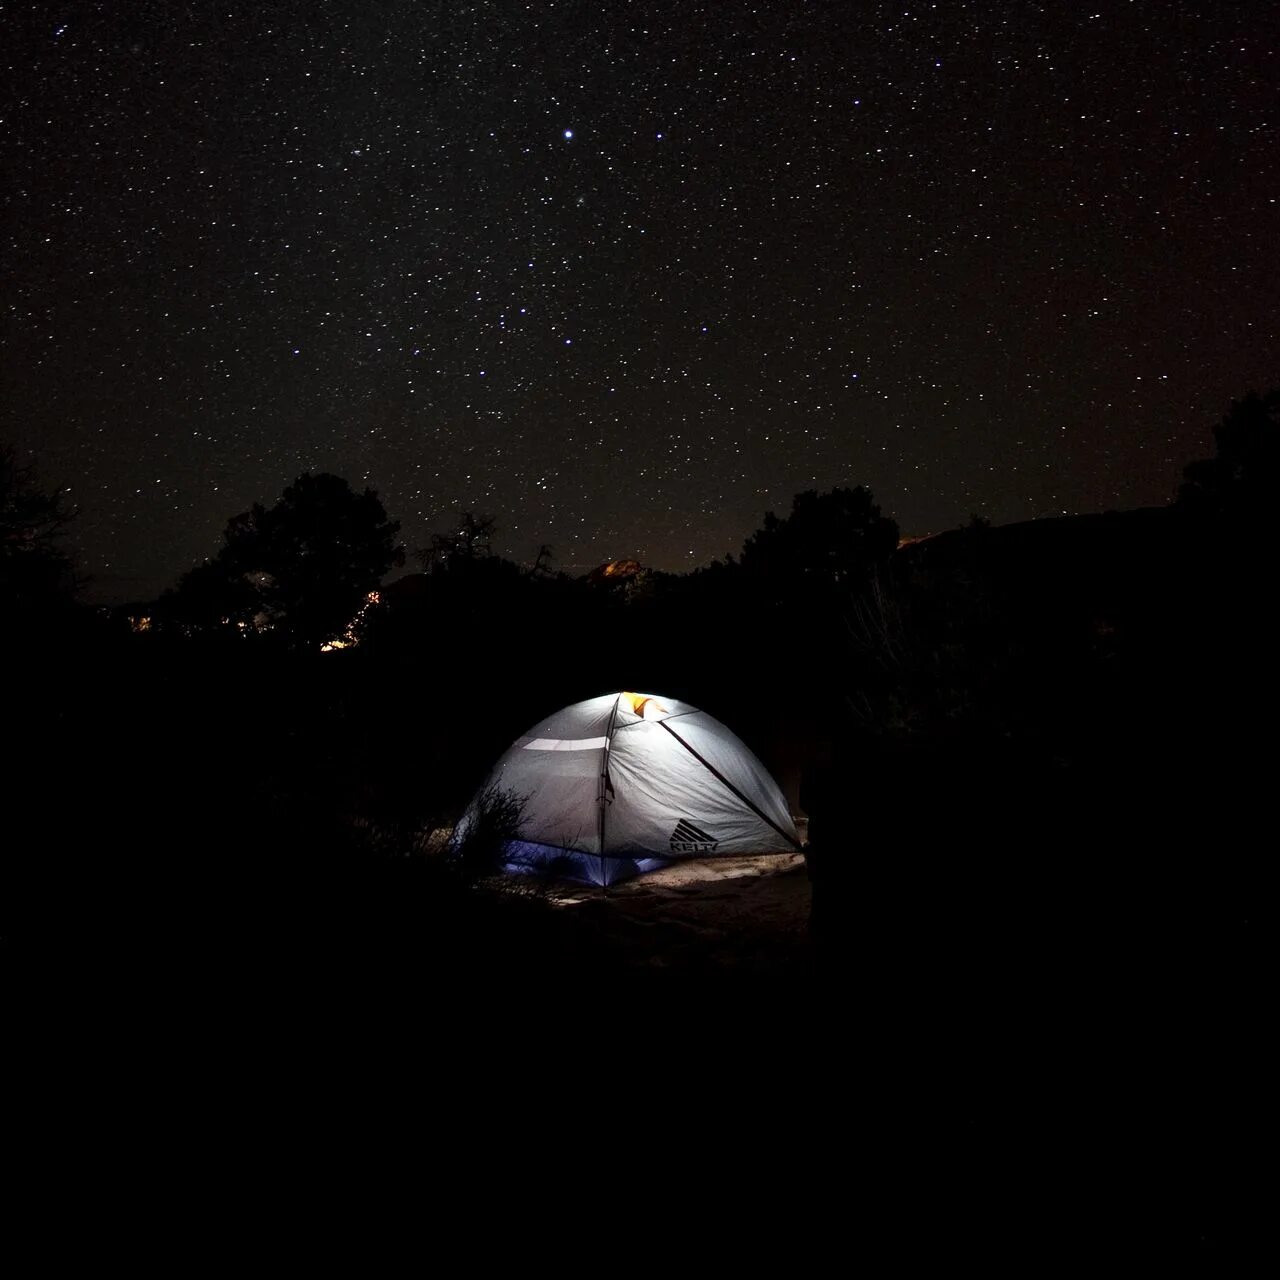 Палатка ночью. Звездное небо и палатка. Обои палатка. Палатка в темноте.